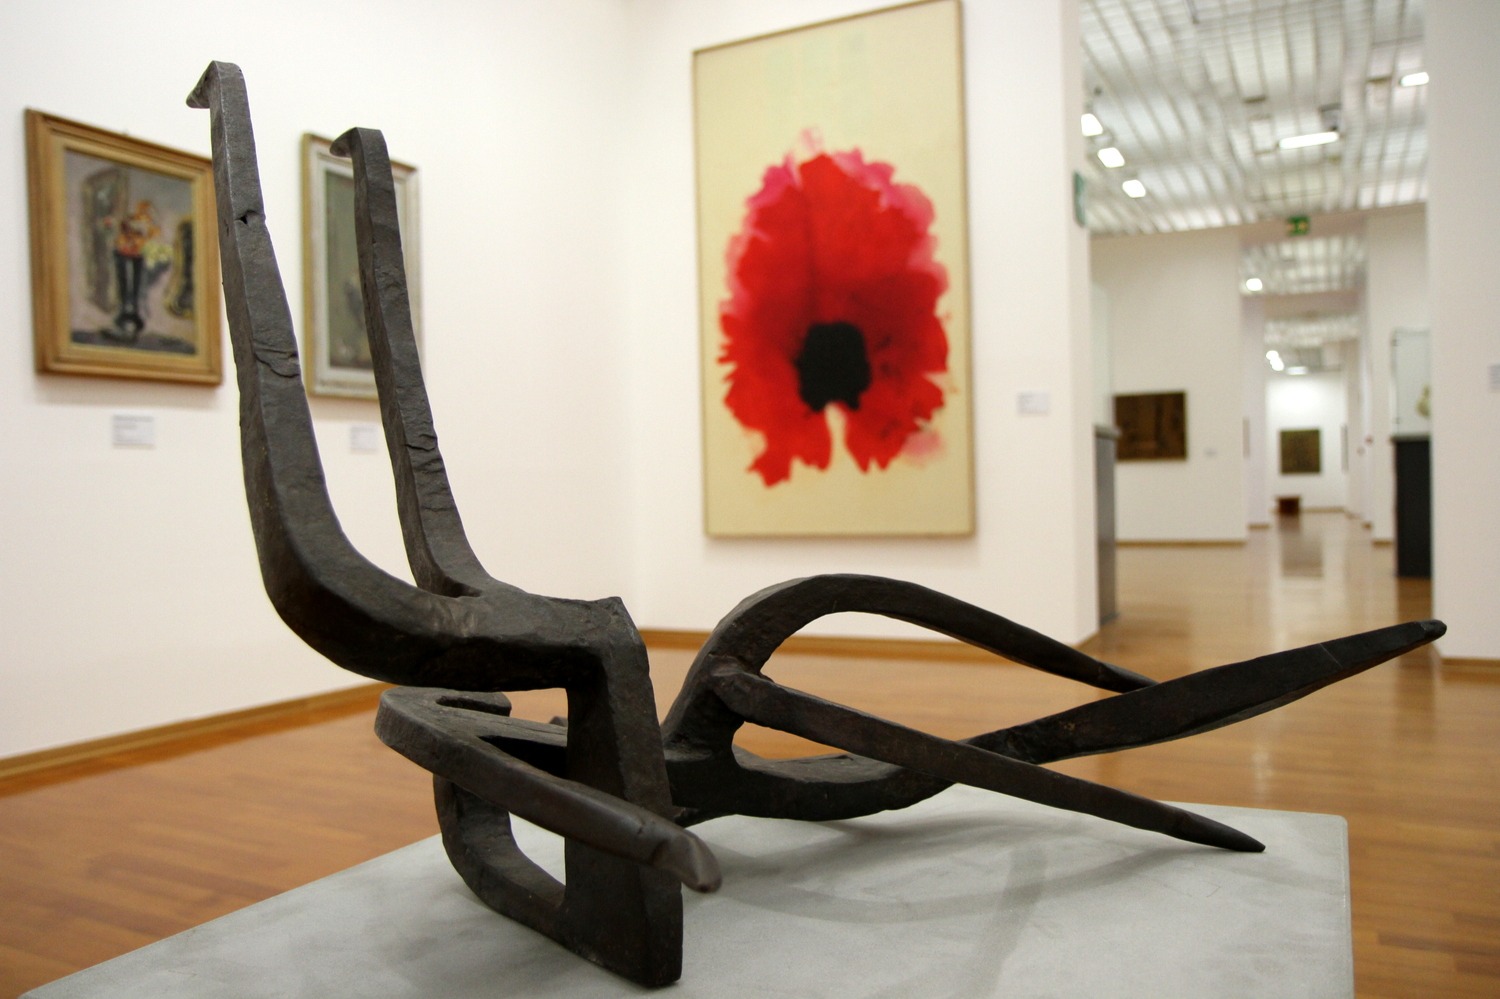 Gam Torino - Modern Art Gallery - Turin - 